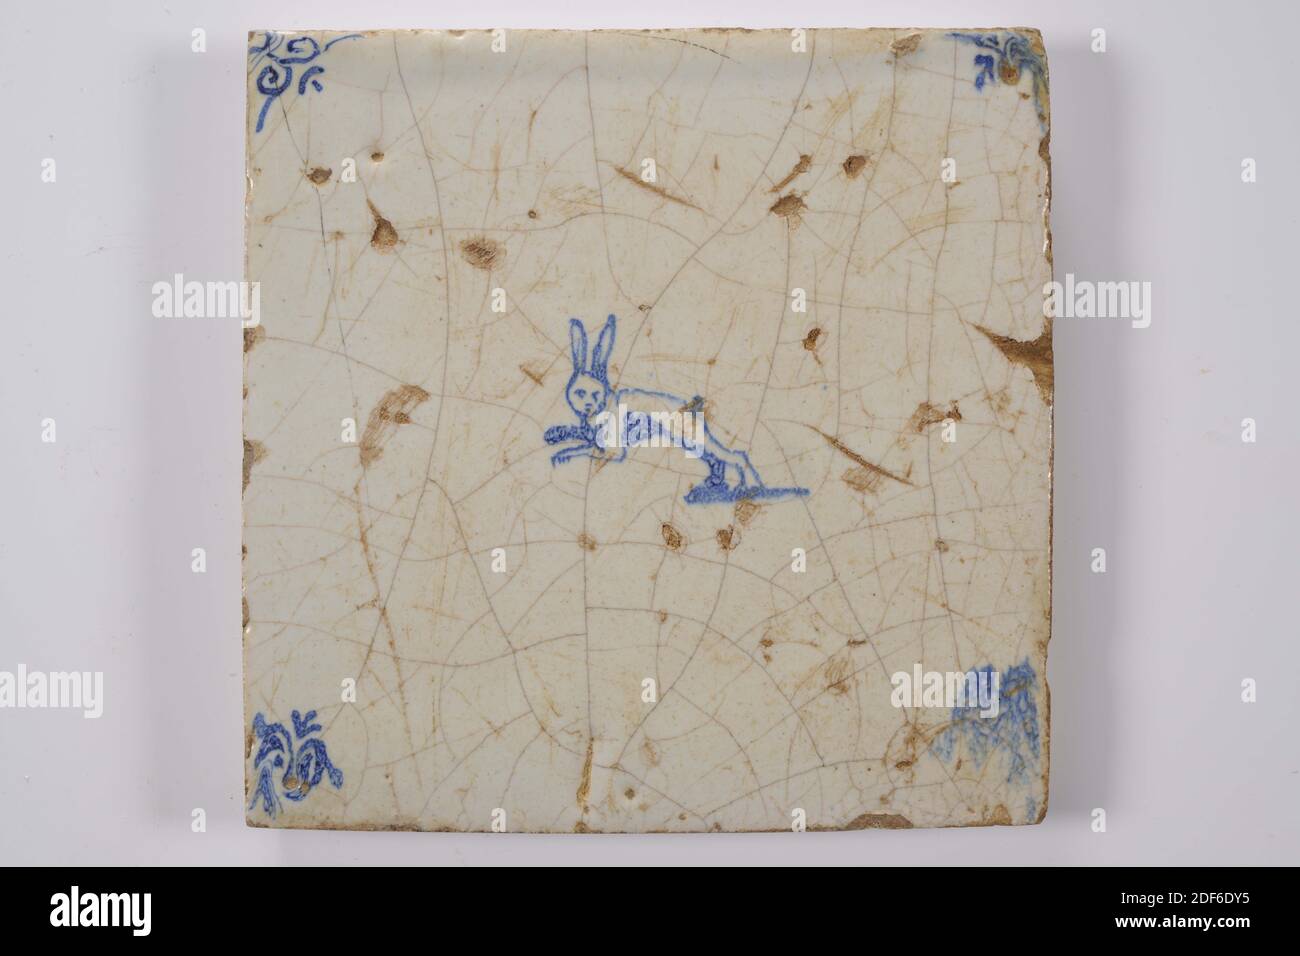 Carreau de mur, Anonyme, entre 1640-1700, glaçure d'étain, faïence, général: 13.4 x 13.5 x 1,3cm (134 x 135 x 13mm), lapin, carreau de mur de faïence recouvert de glaçure d'étain et peint en bleu. La tuile représente un lapin bondissant orienté vers la gauche. La tuile a une tête de boeuf comme un motif de coin, 1995 Banque D'Images